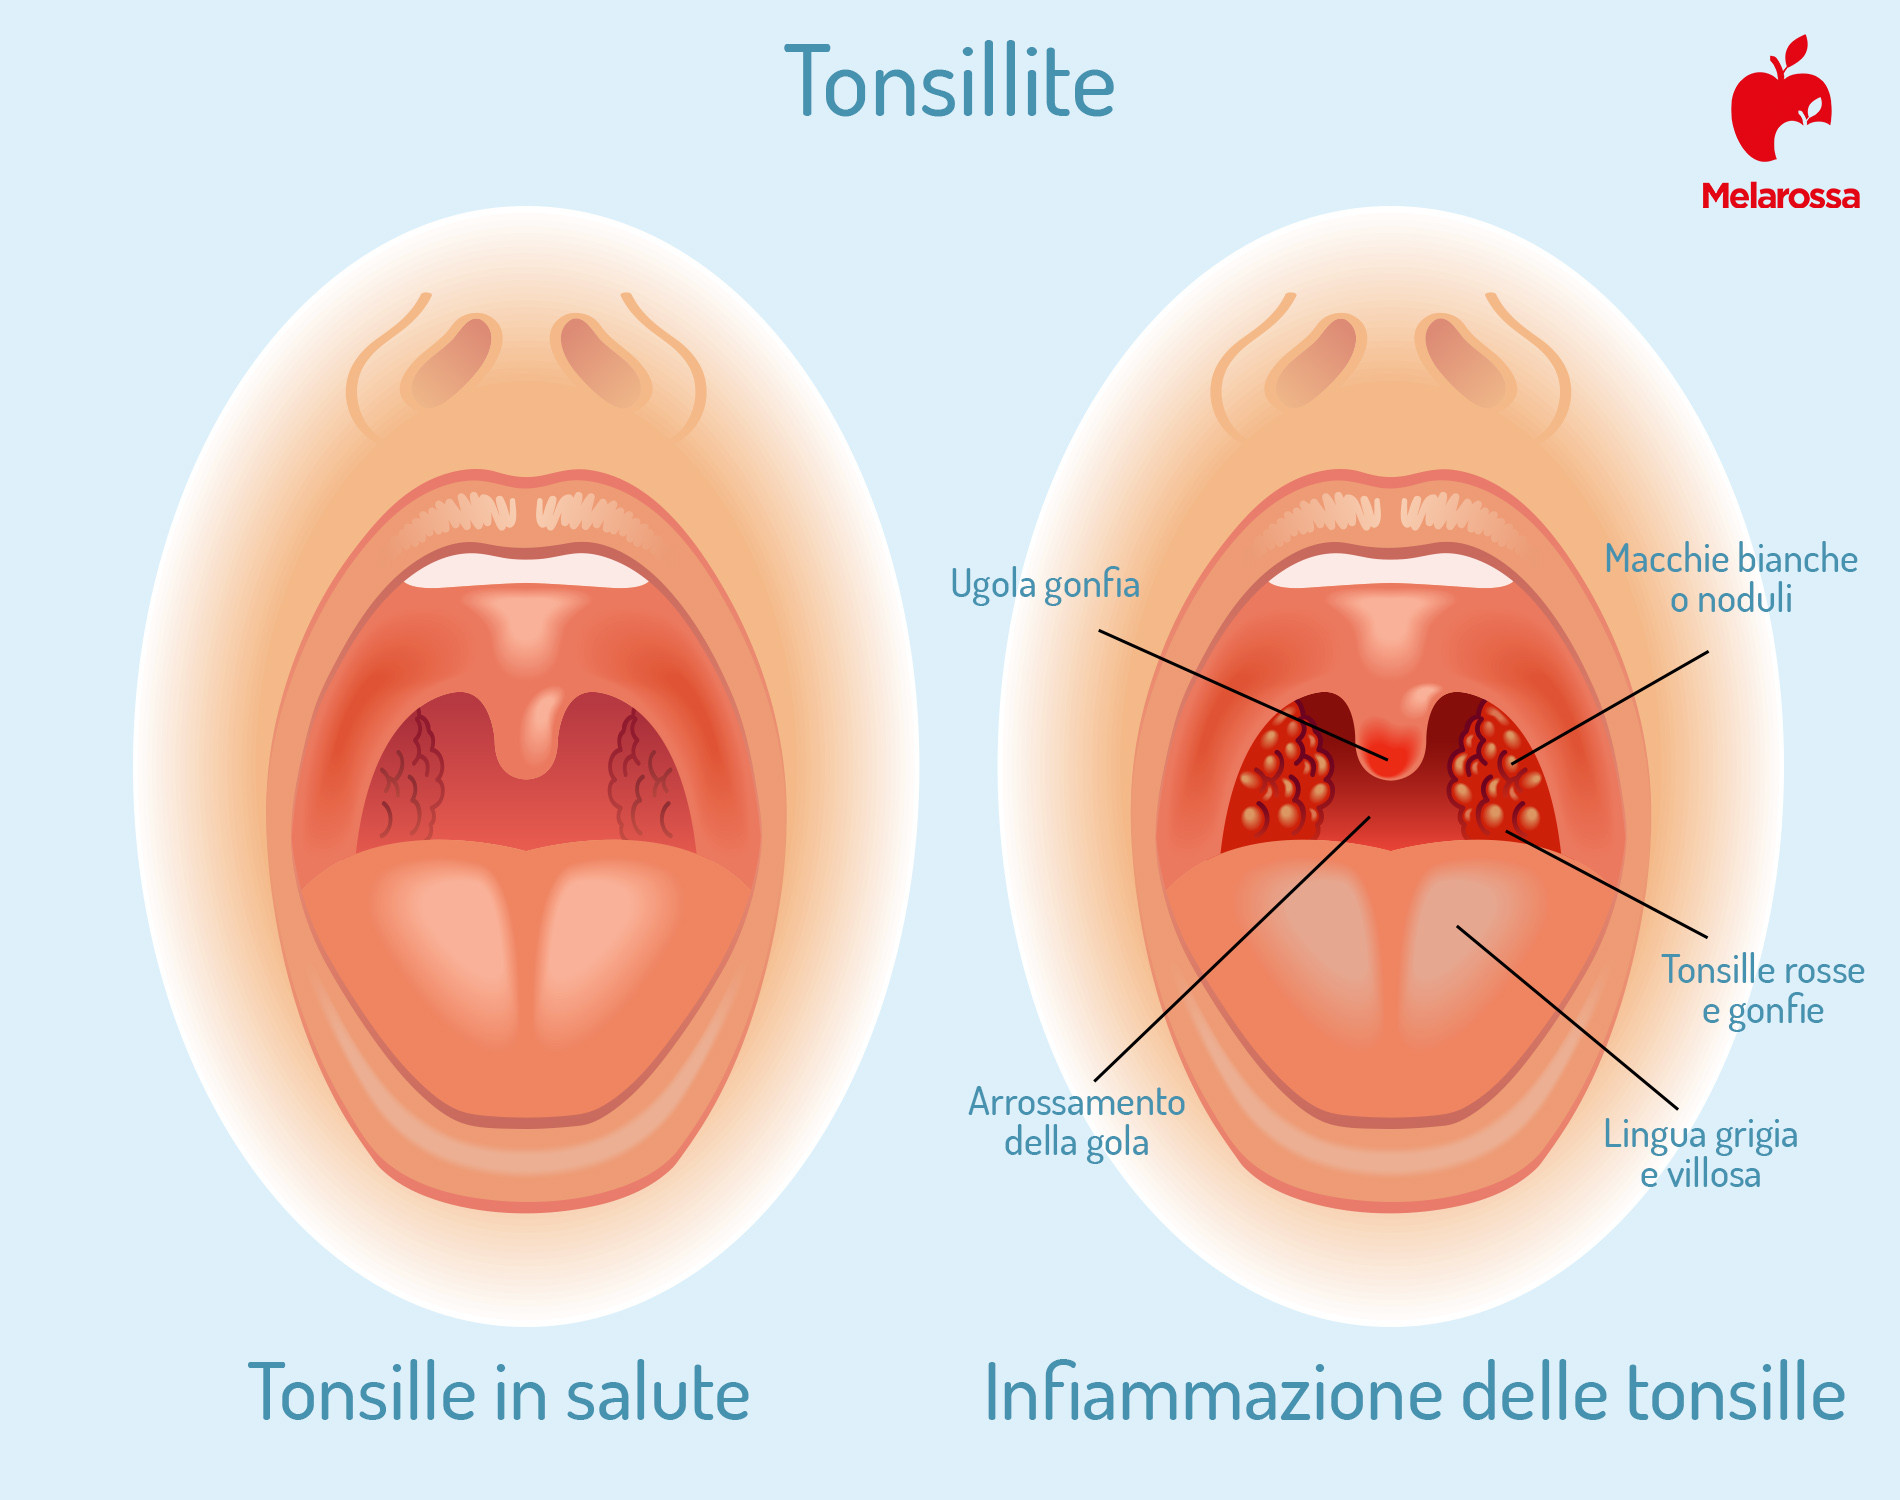 placche in gola: infiammazione delle tonsille 